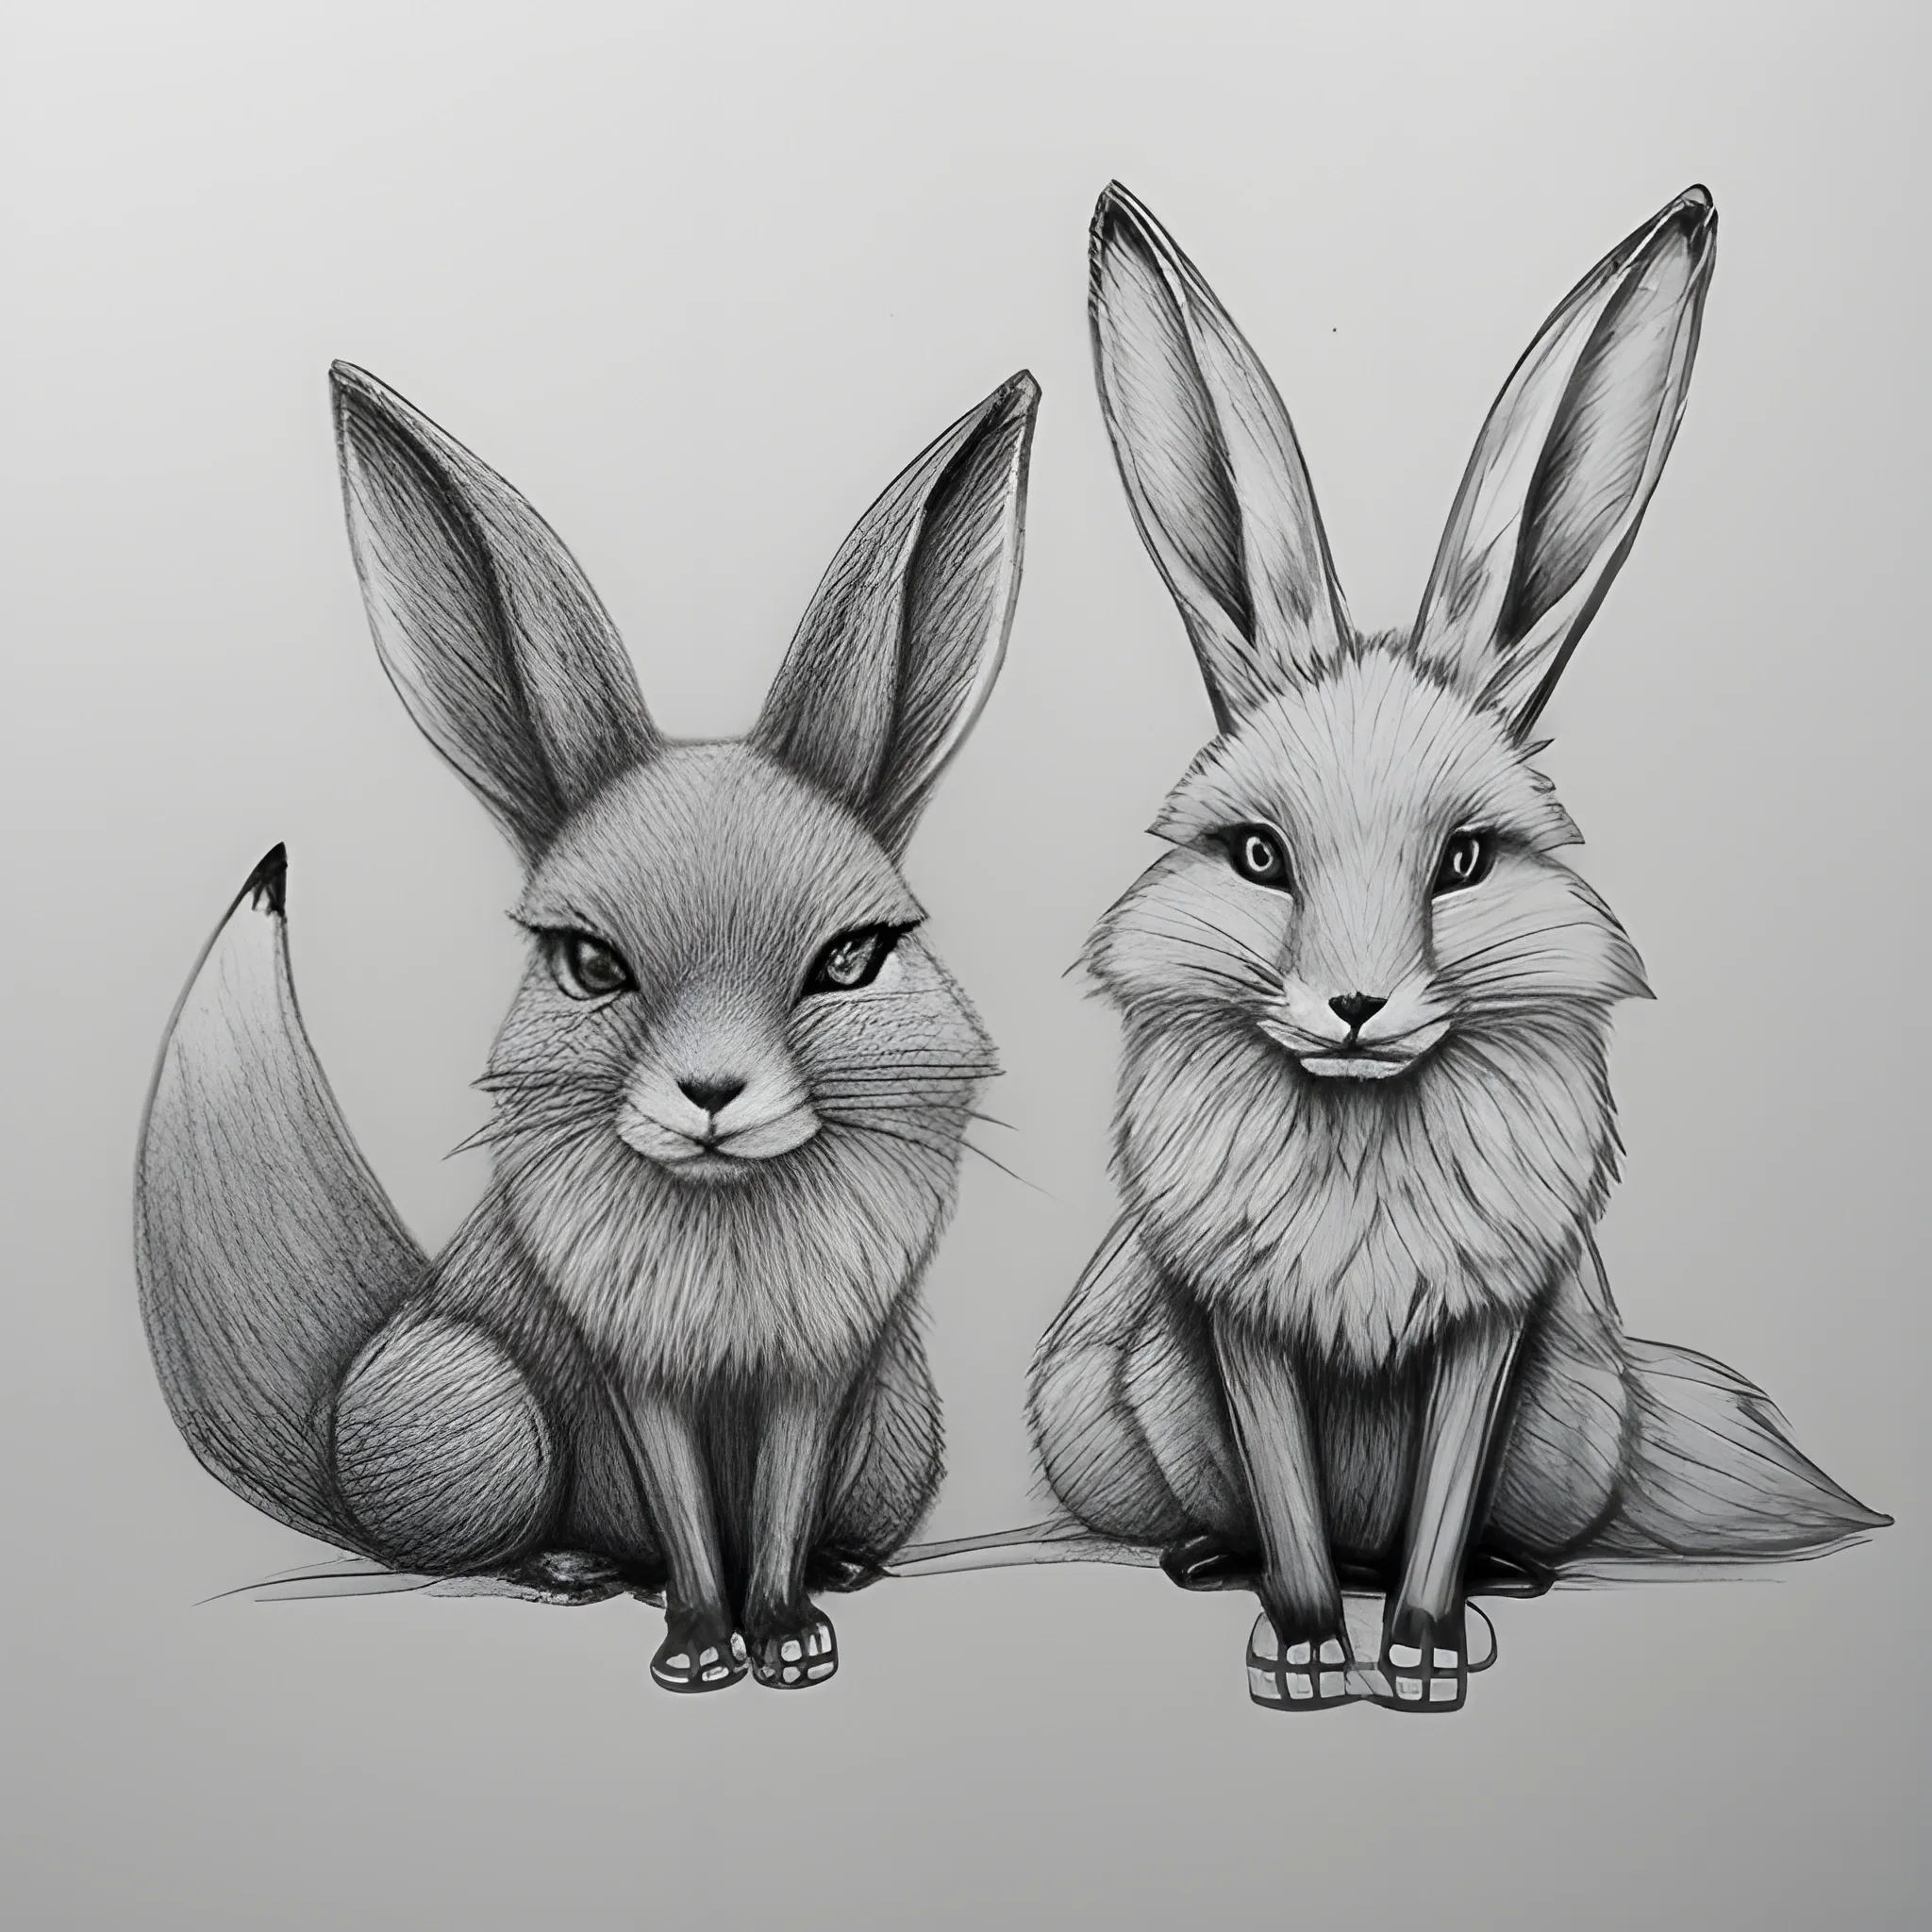 Bunny | Graphite pencil drawing. - - - NL: Konijntje. Grafie… | Flickr